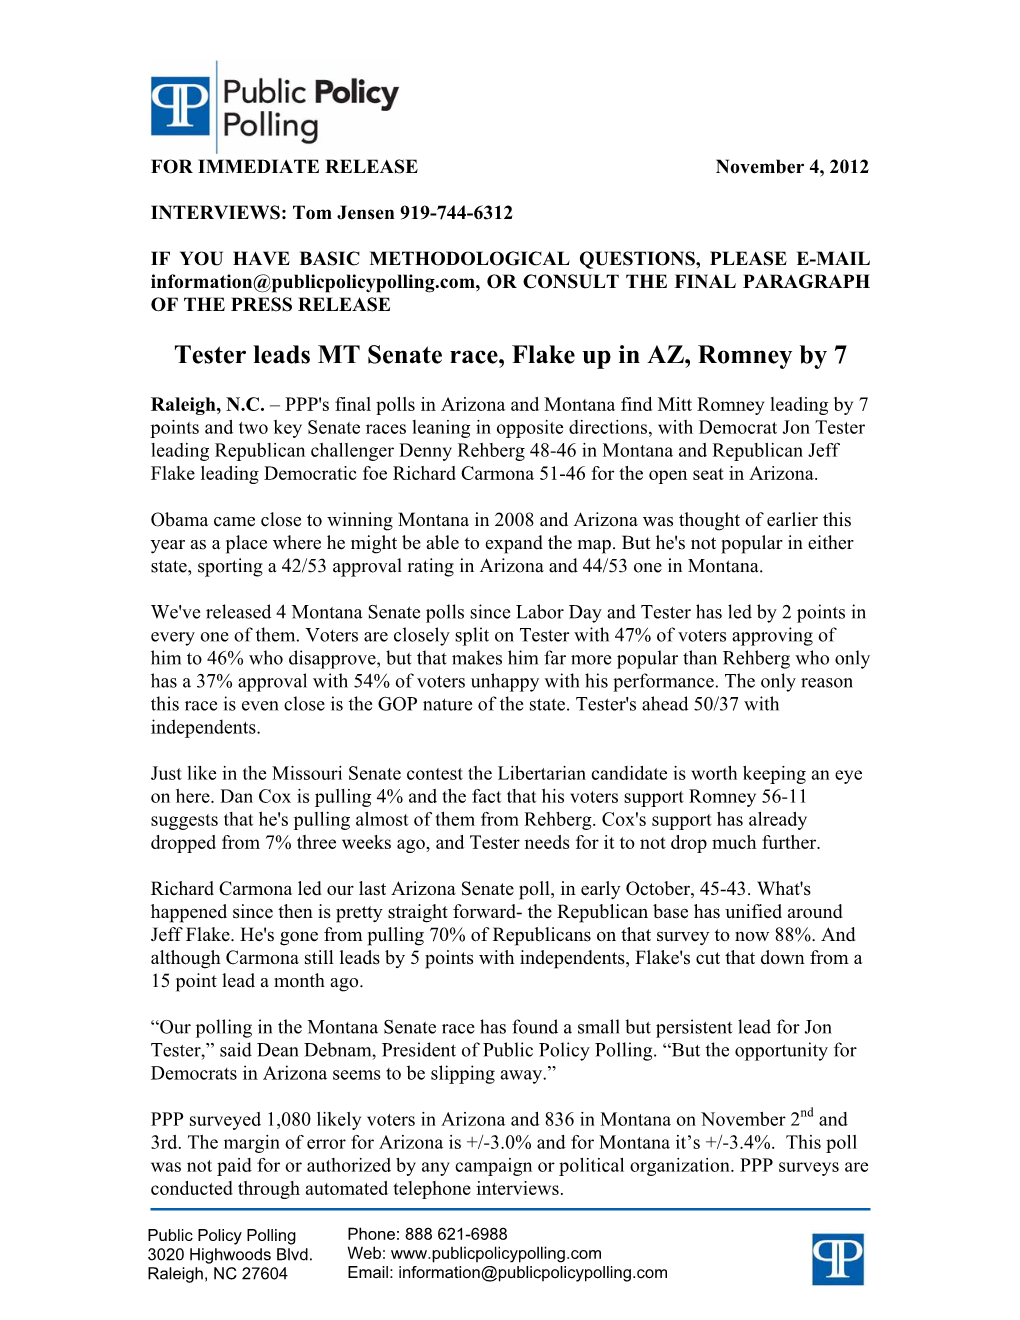 Tester Leads MT Senate Race, Flake up in AZ, Romney by 7